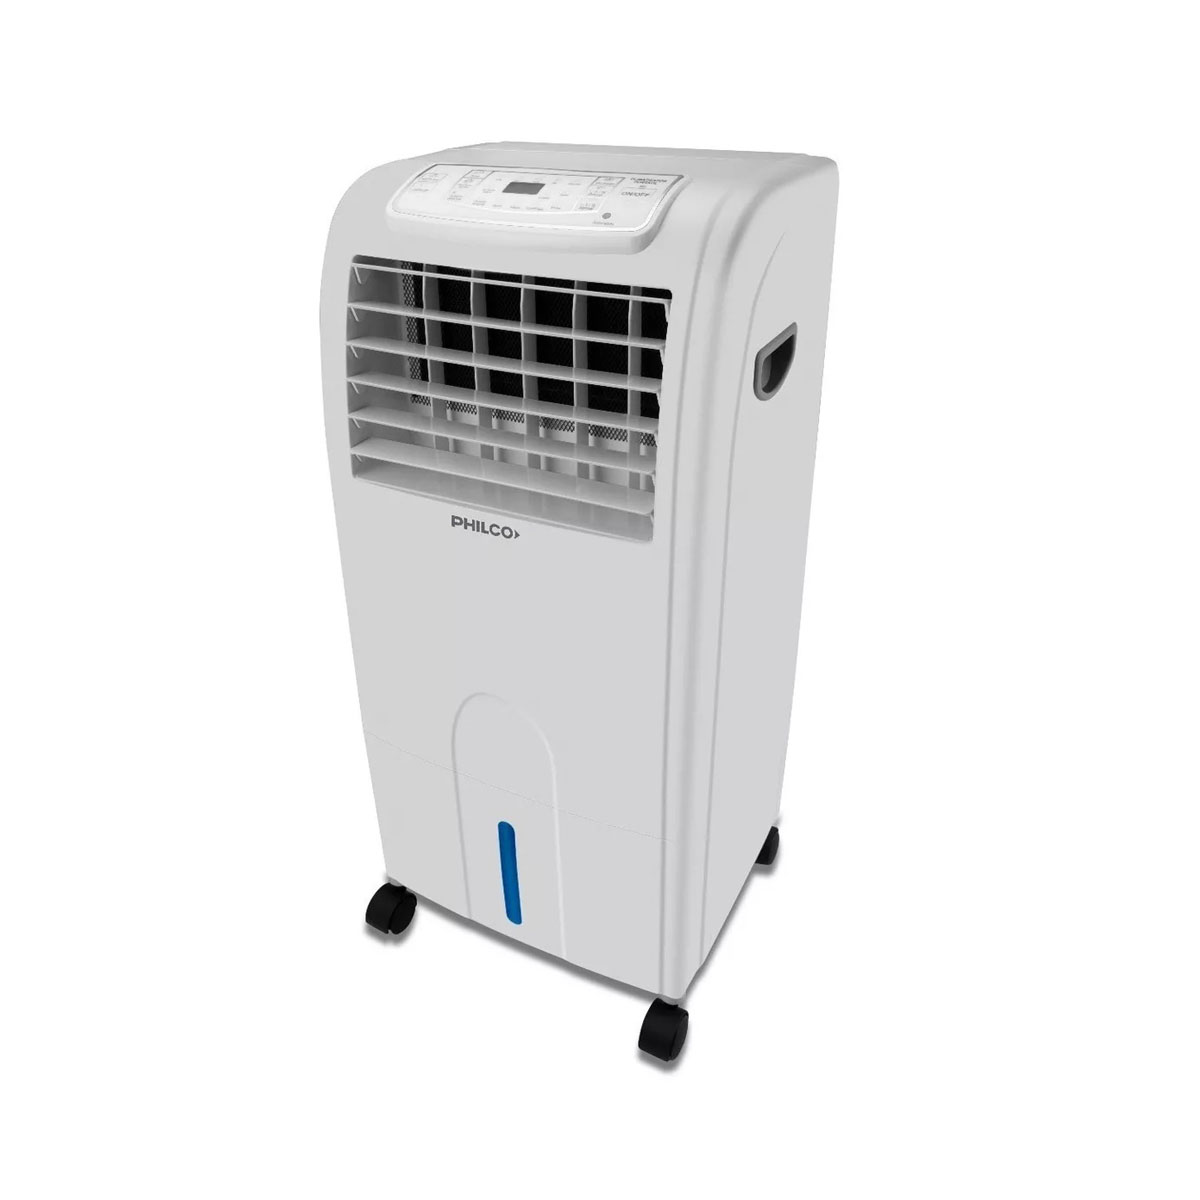 Climatizador evaporativo frío/calor DT2022